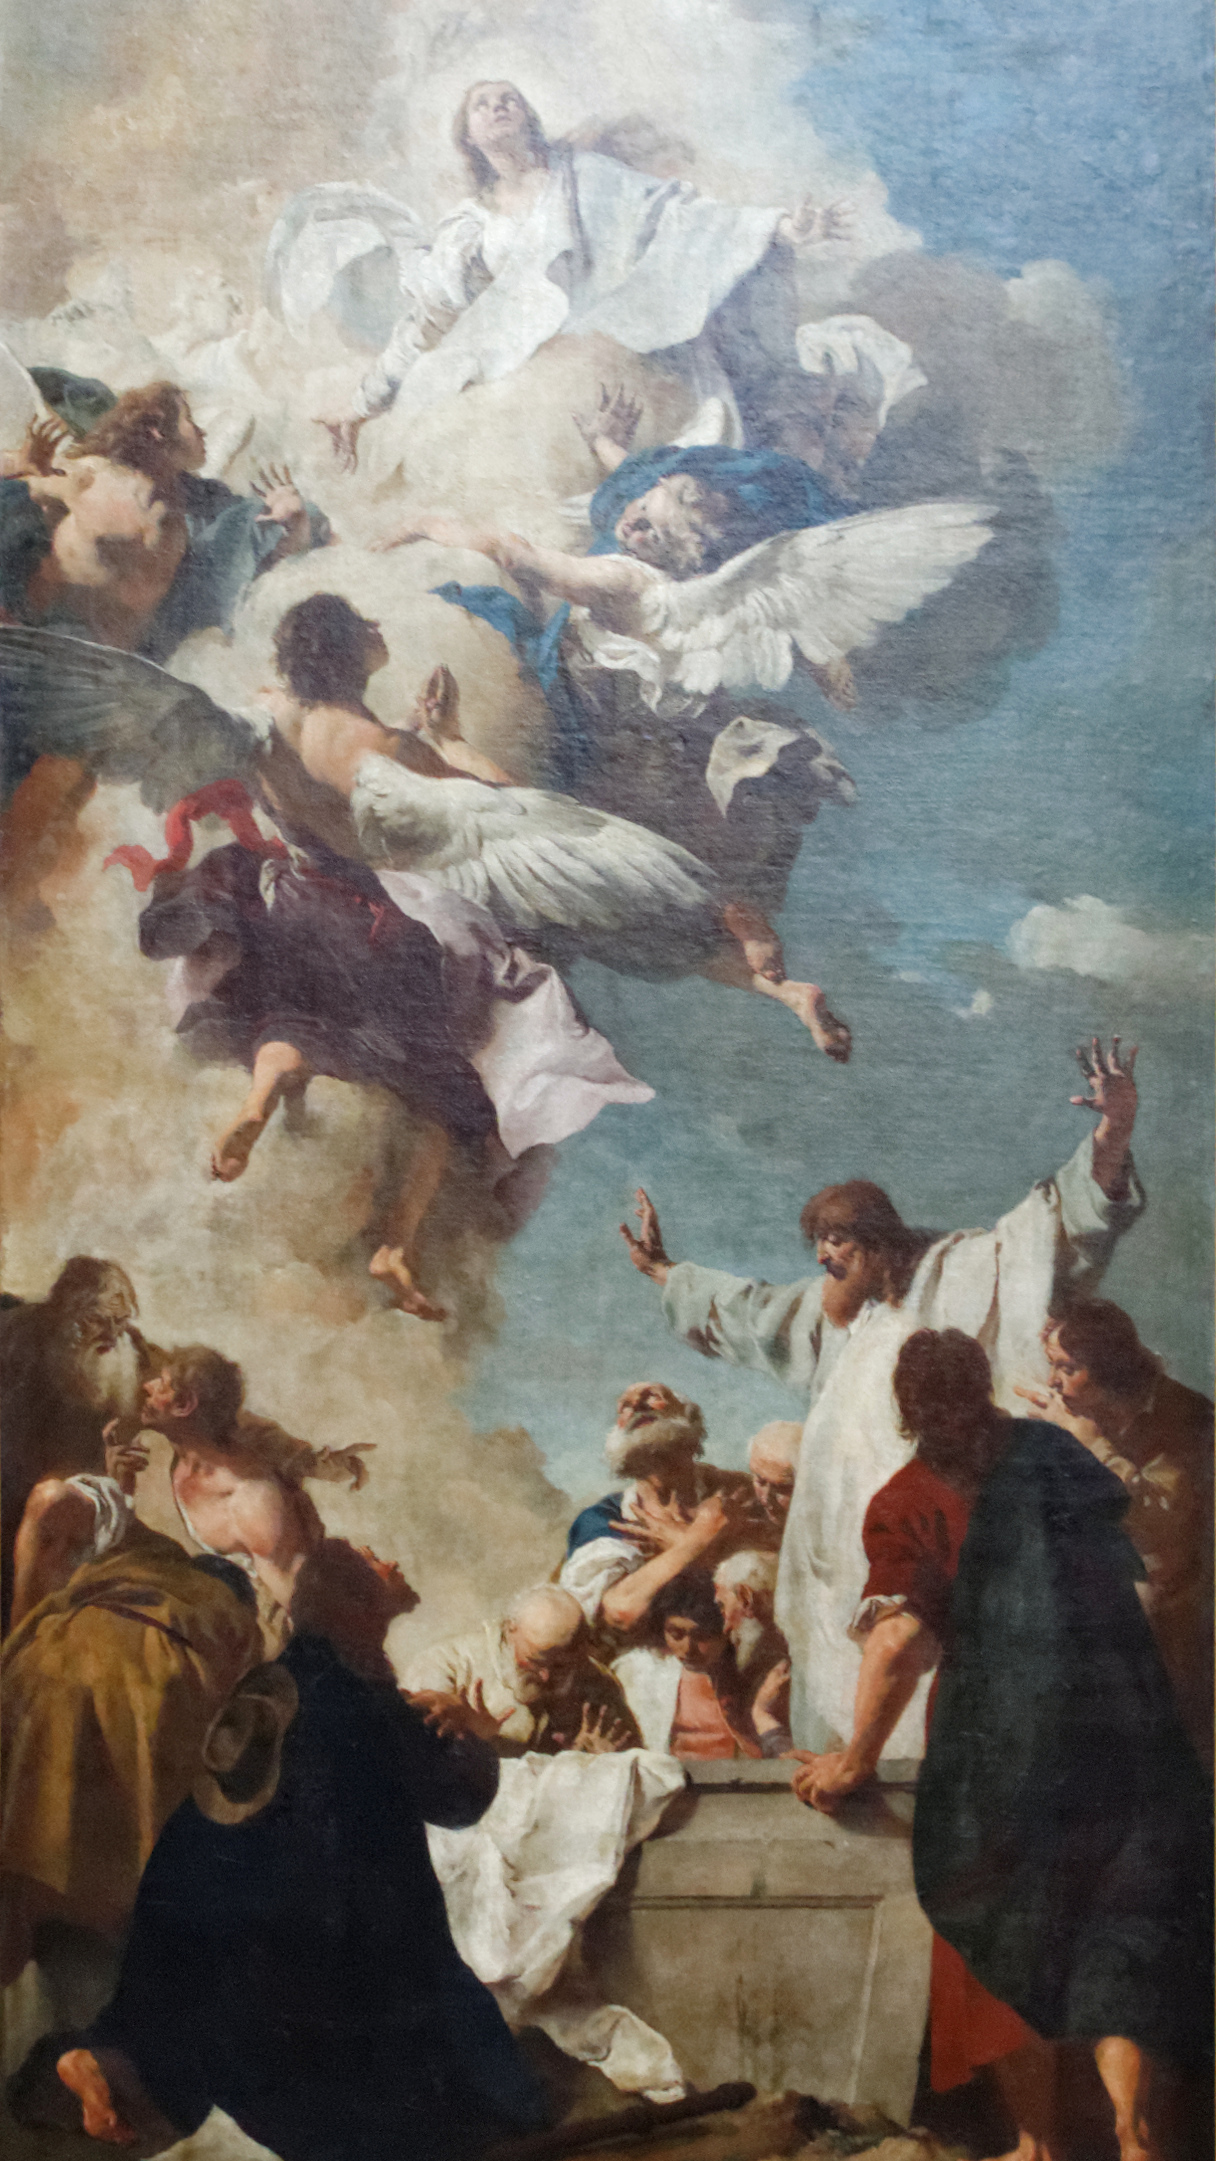 Das Bild zeigt in gemalter Version die Himmelfahrt Marias.